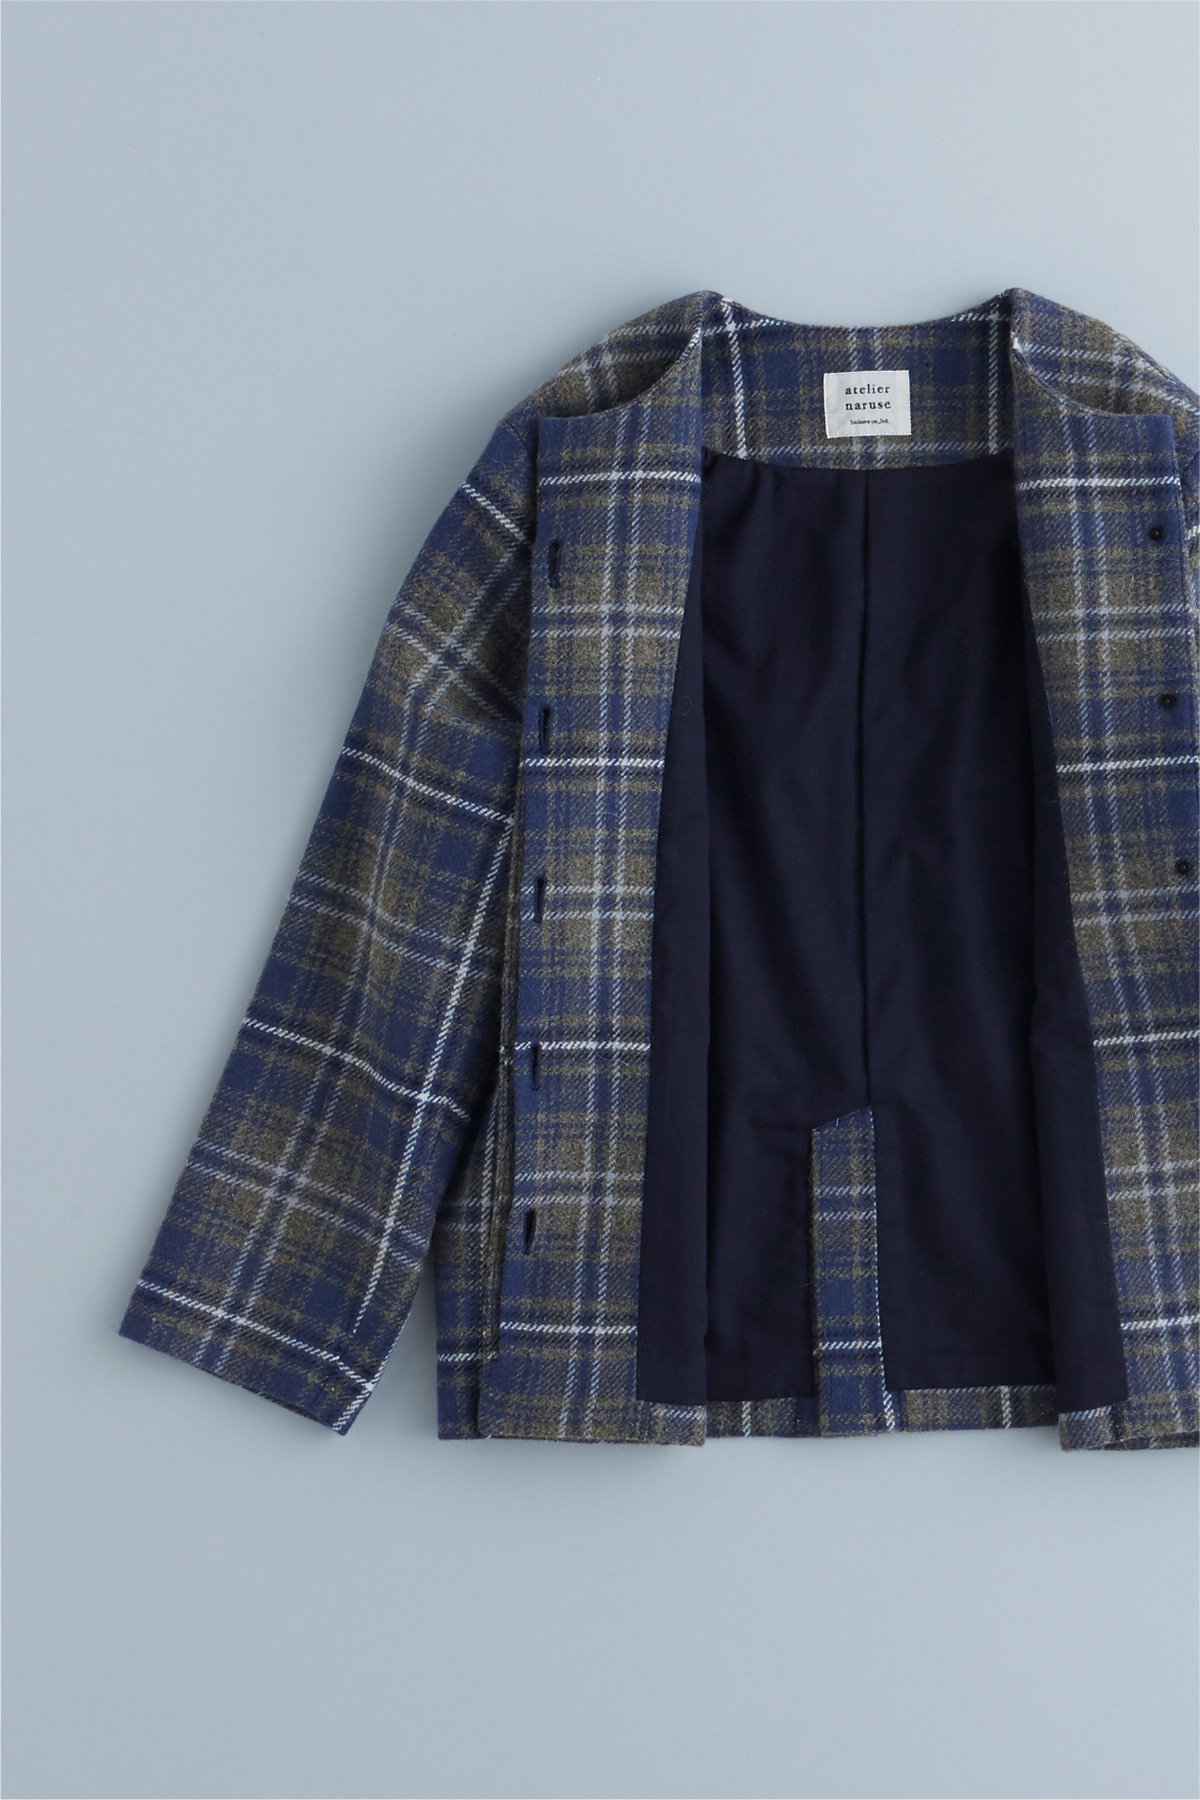 tartan check tweed jacket - atelier naruse | Online store